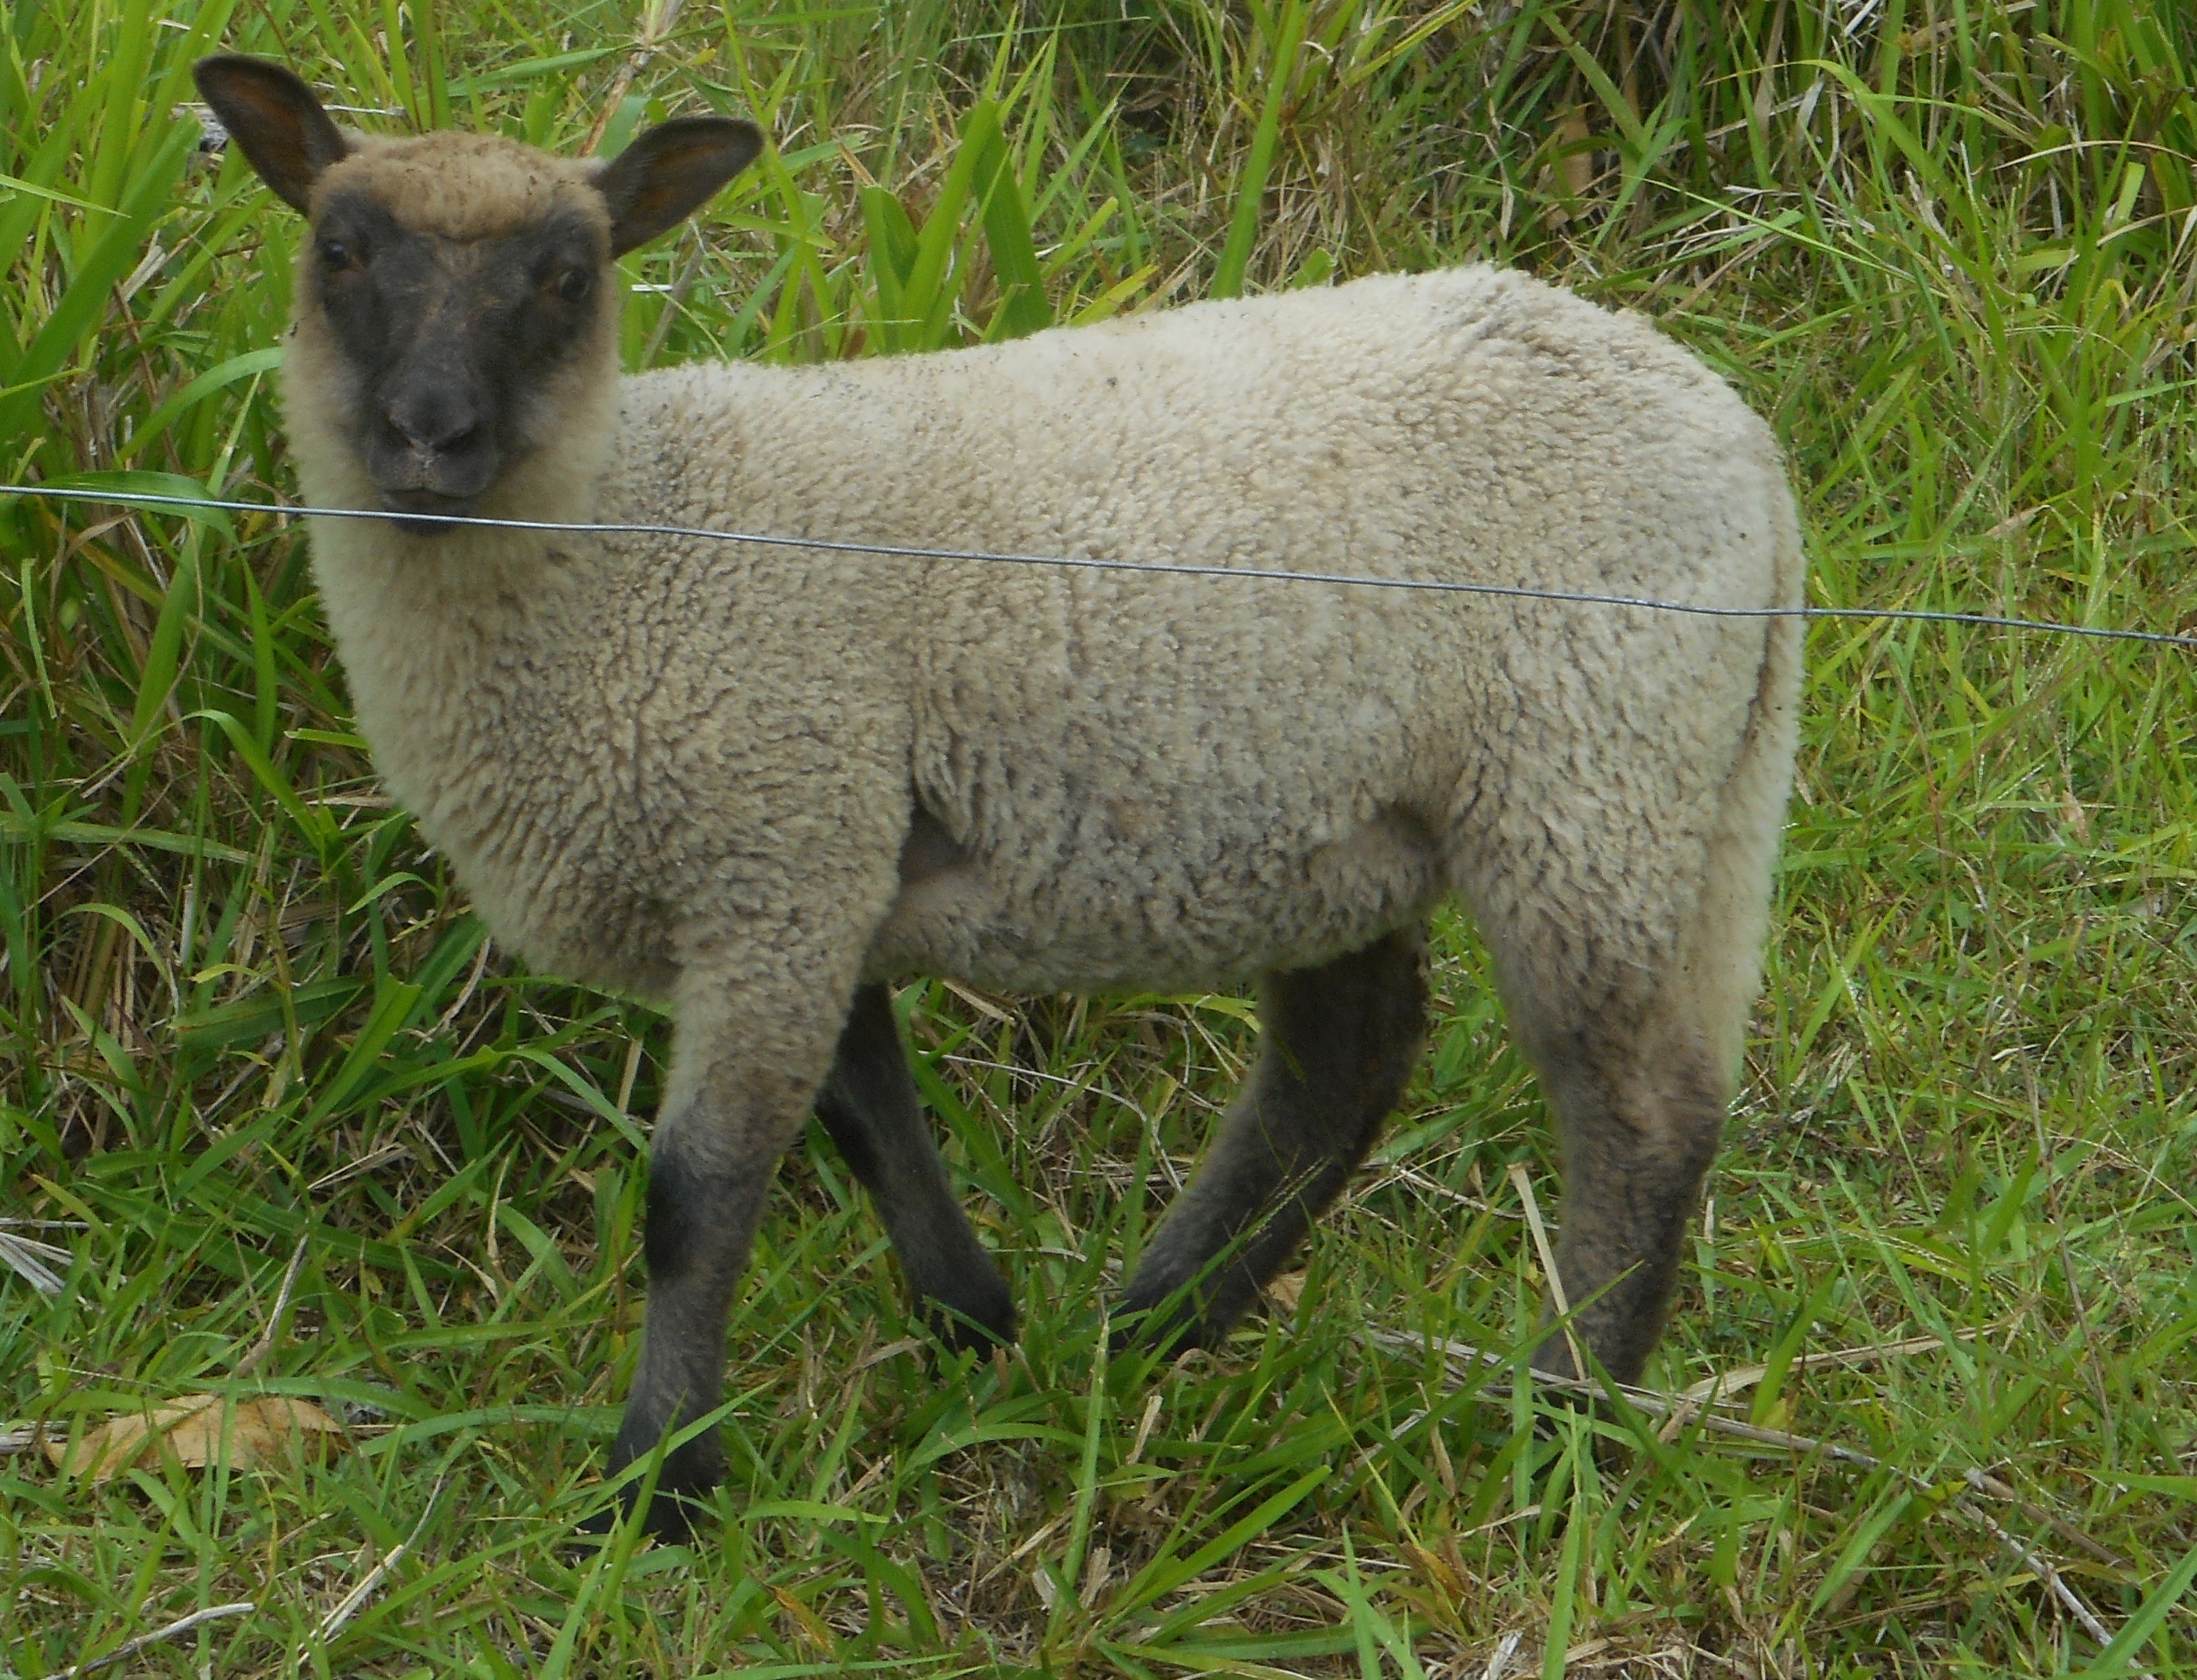 Freesia's ewe